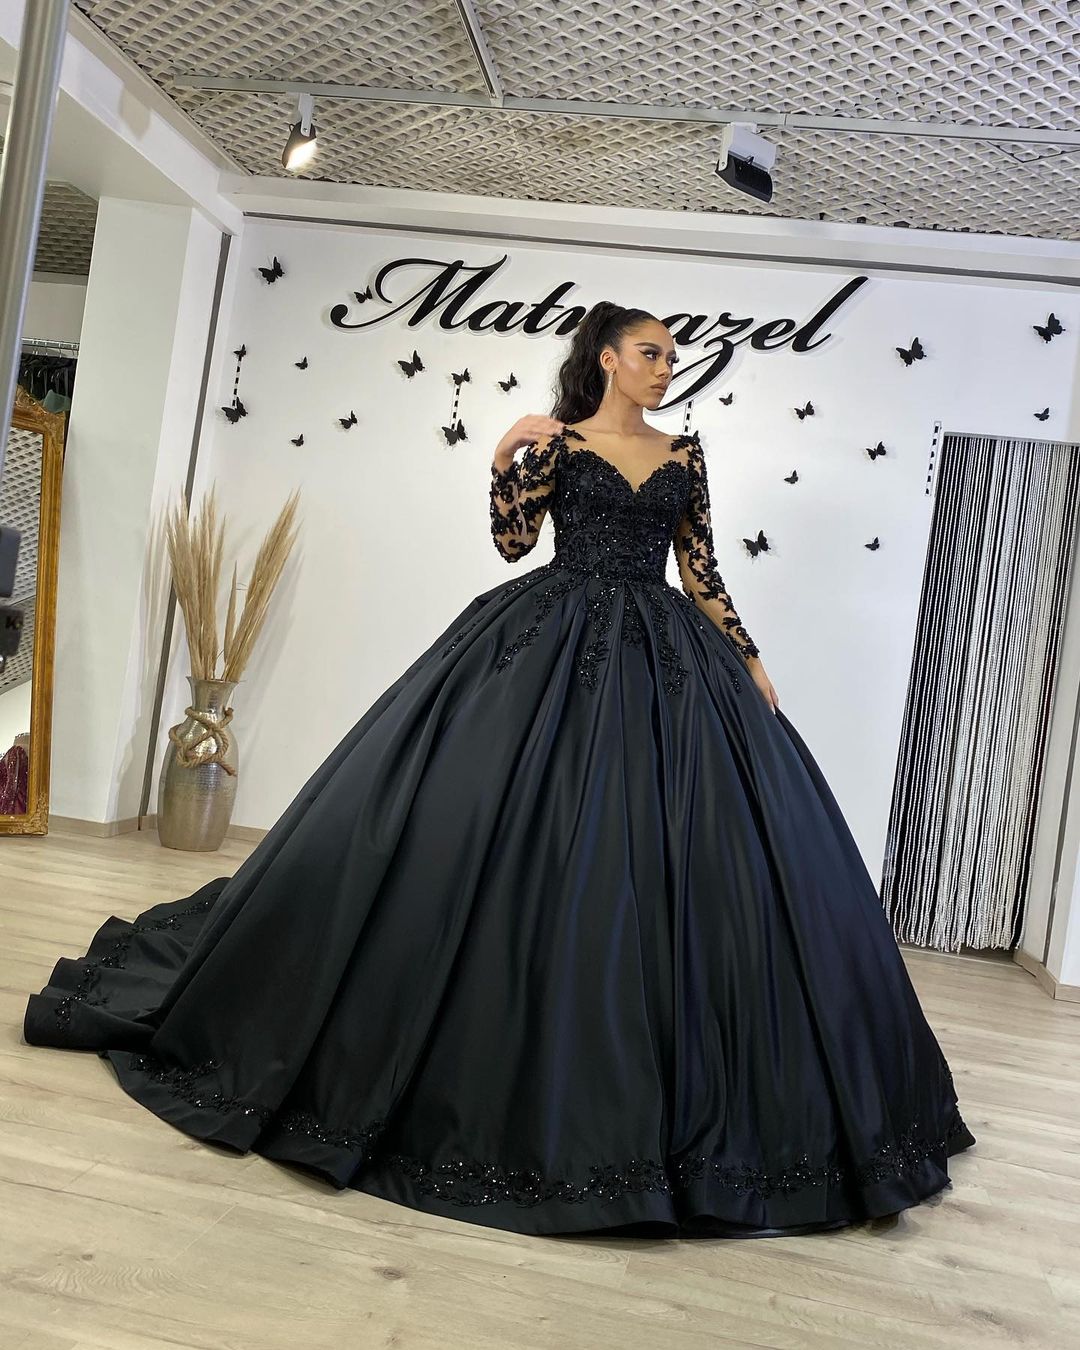 Bestellen Sie Schwarze Brautkleider mit Ärmel online bei babyonlinedress.de. Prinzessin Hochzeitskleider Spitze für Sie zur Hochzeit gehen.